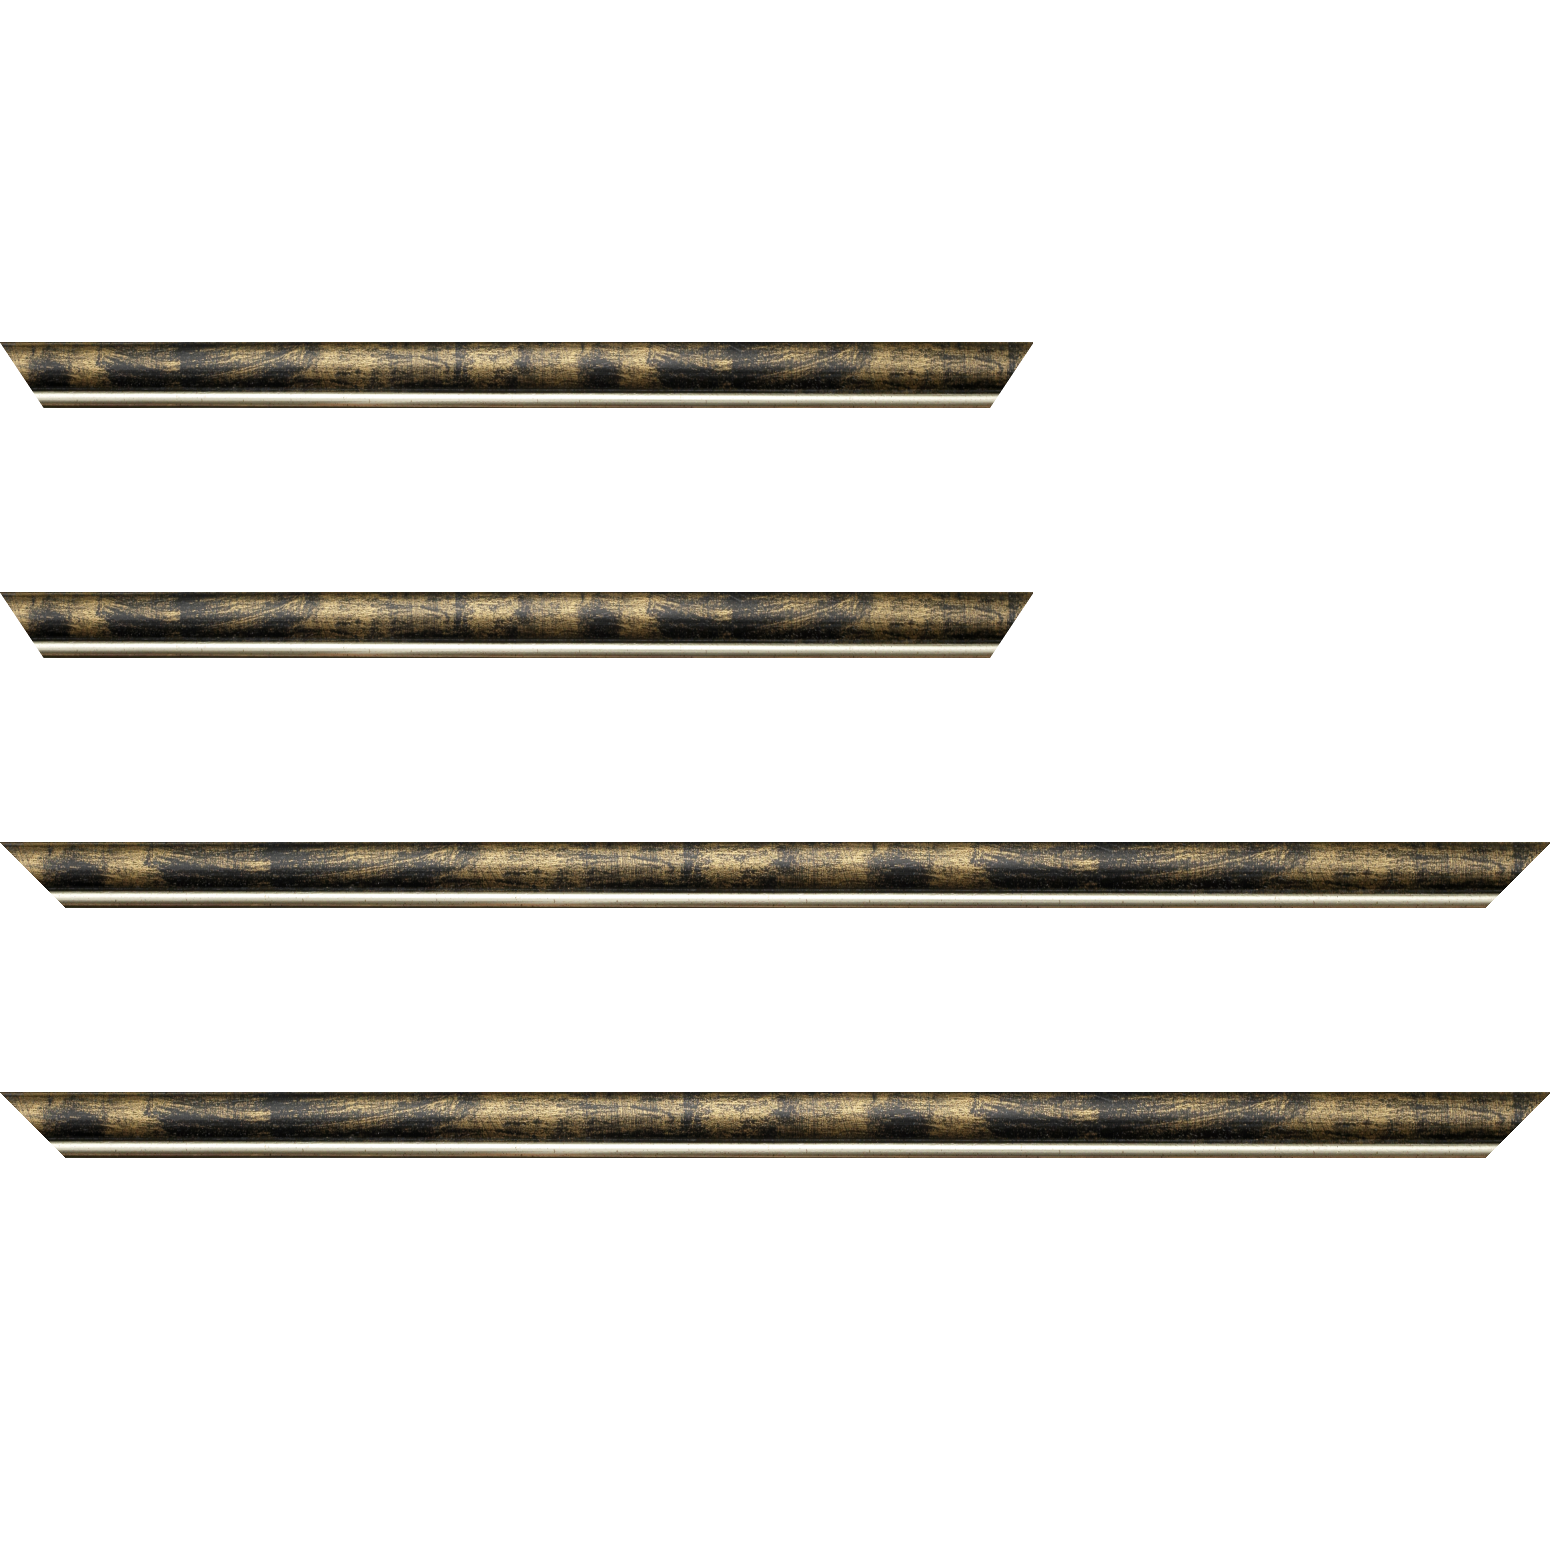 Baguette bois profil arrondi largeur 2.1cm  couleur noir fond or filet argent chaud - 28x34